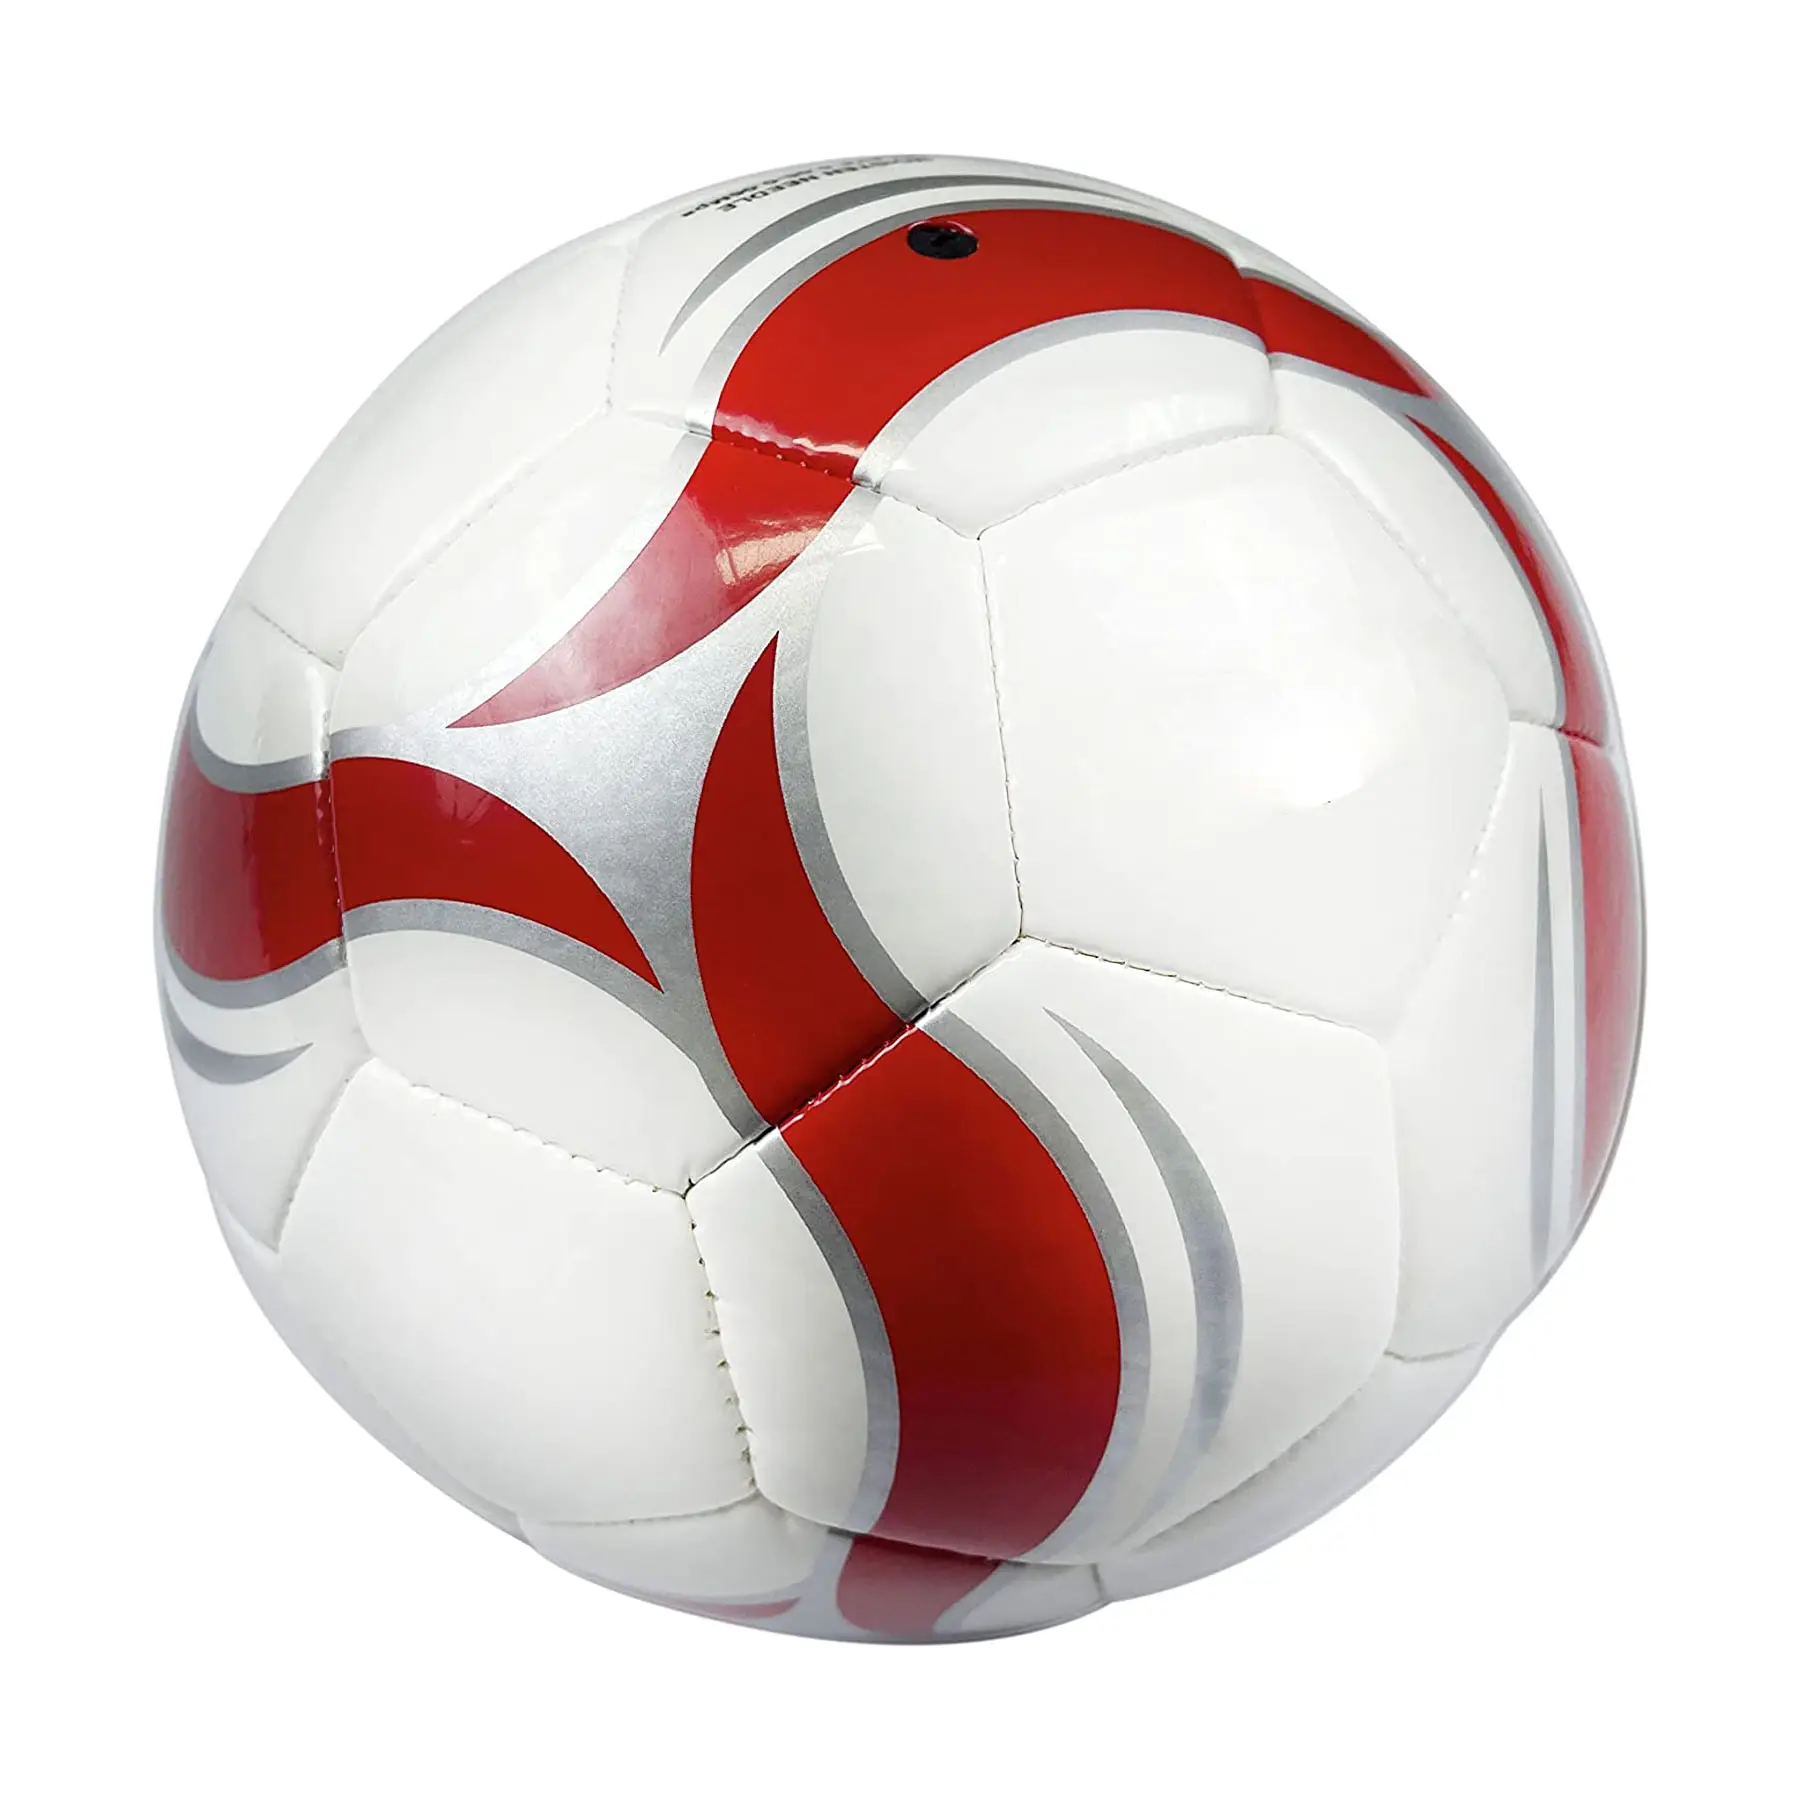 رخيصة الثمن و عالية الجودة مخصص طباعة الصانع مخصصة كرة القدم القياسية حجم مخصص لكرة القدم الكرة أدوات رياضية